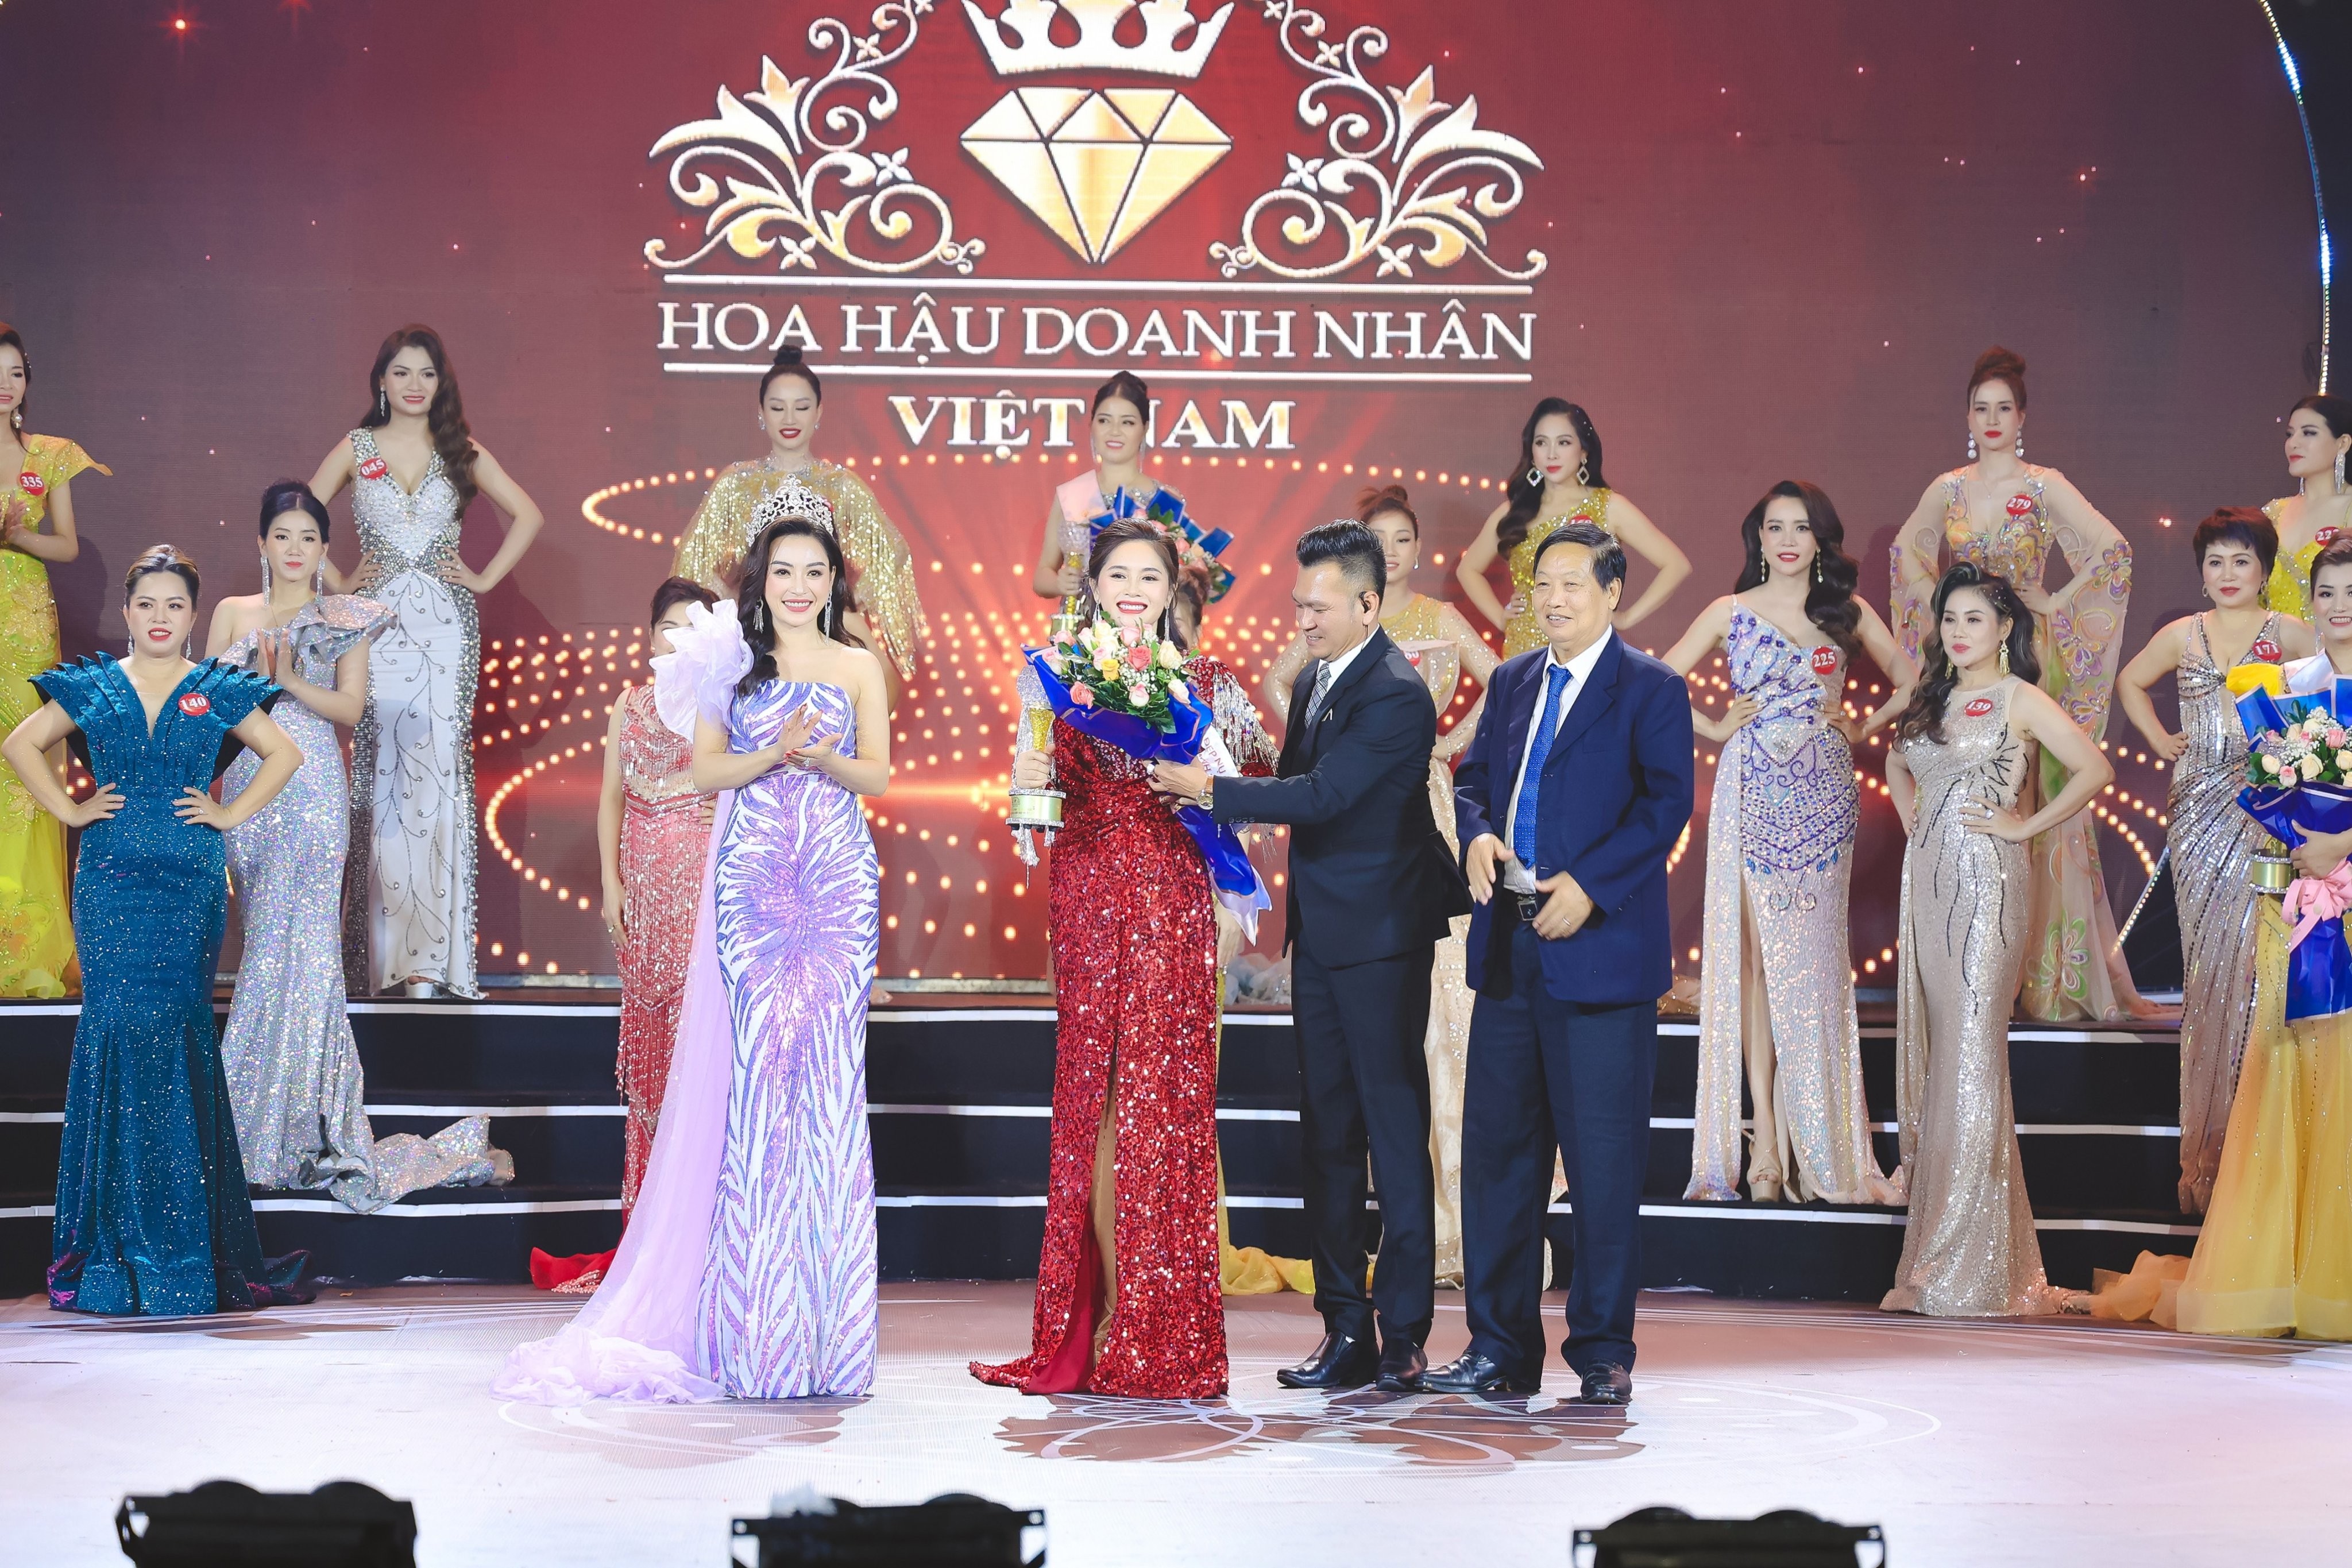 Doanh nhân Nguyễn Thị Tình đạt danh hiệu Người đẹp có nụ cười đẹp Hoa hậu Doanh nhân Việt Nam 2022